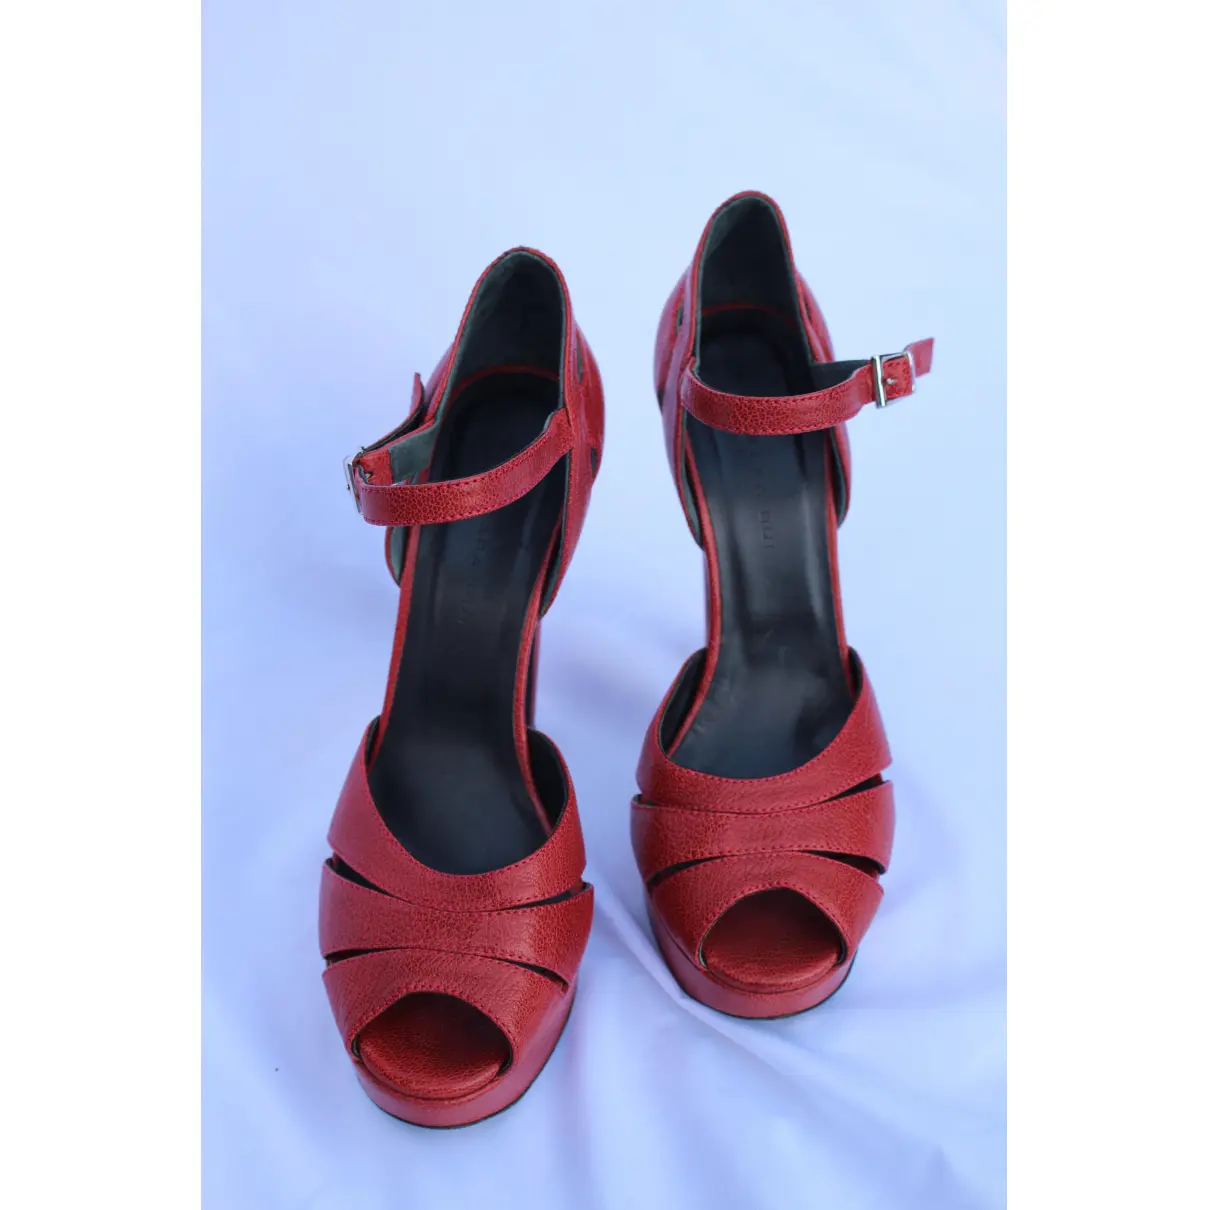 Buy Barbara Bui Leather heels online